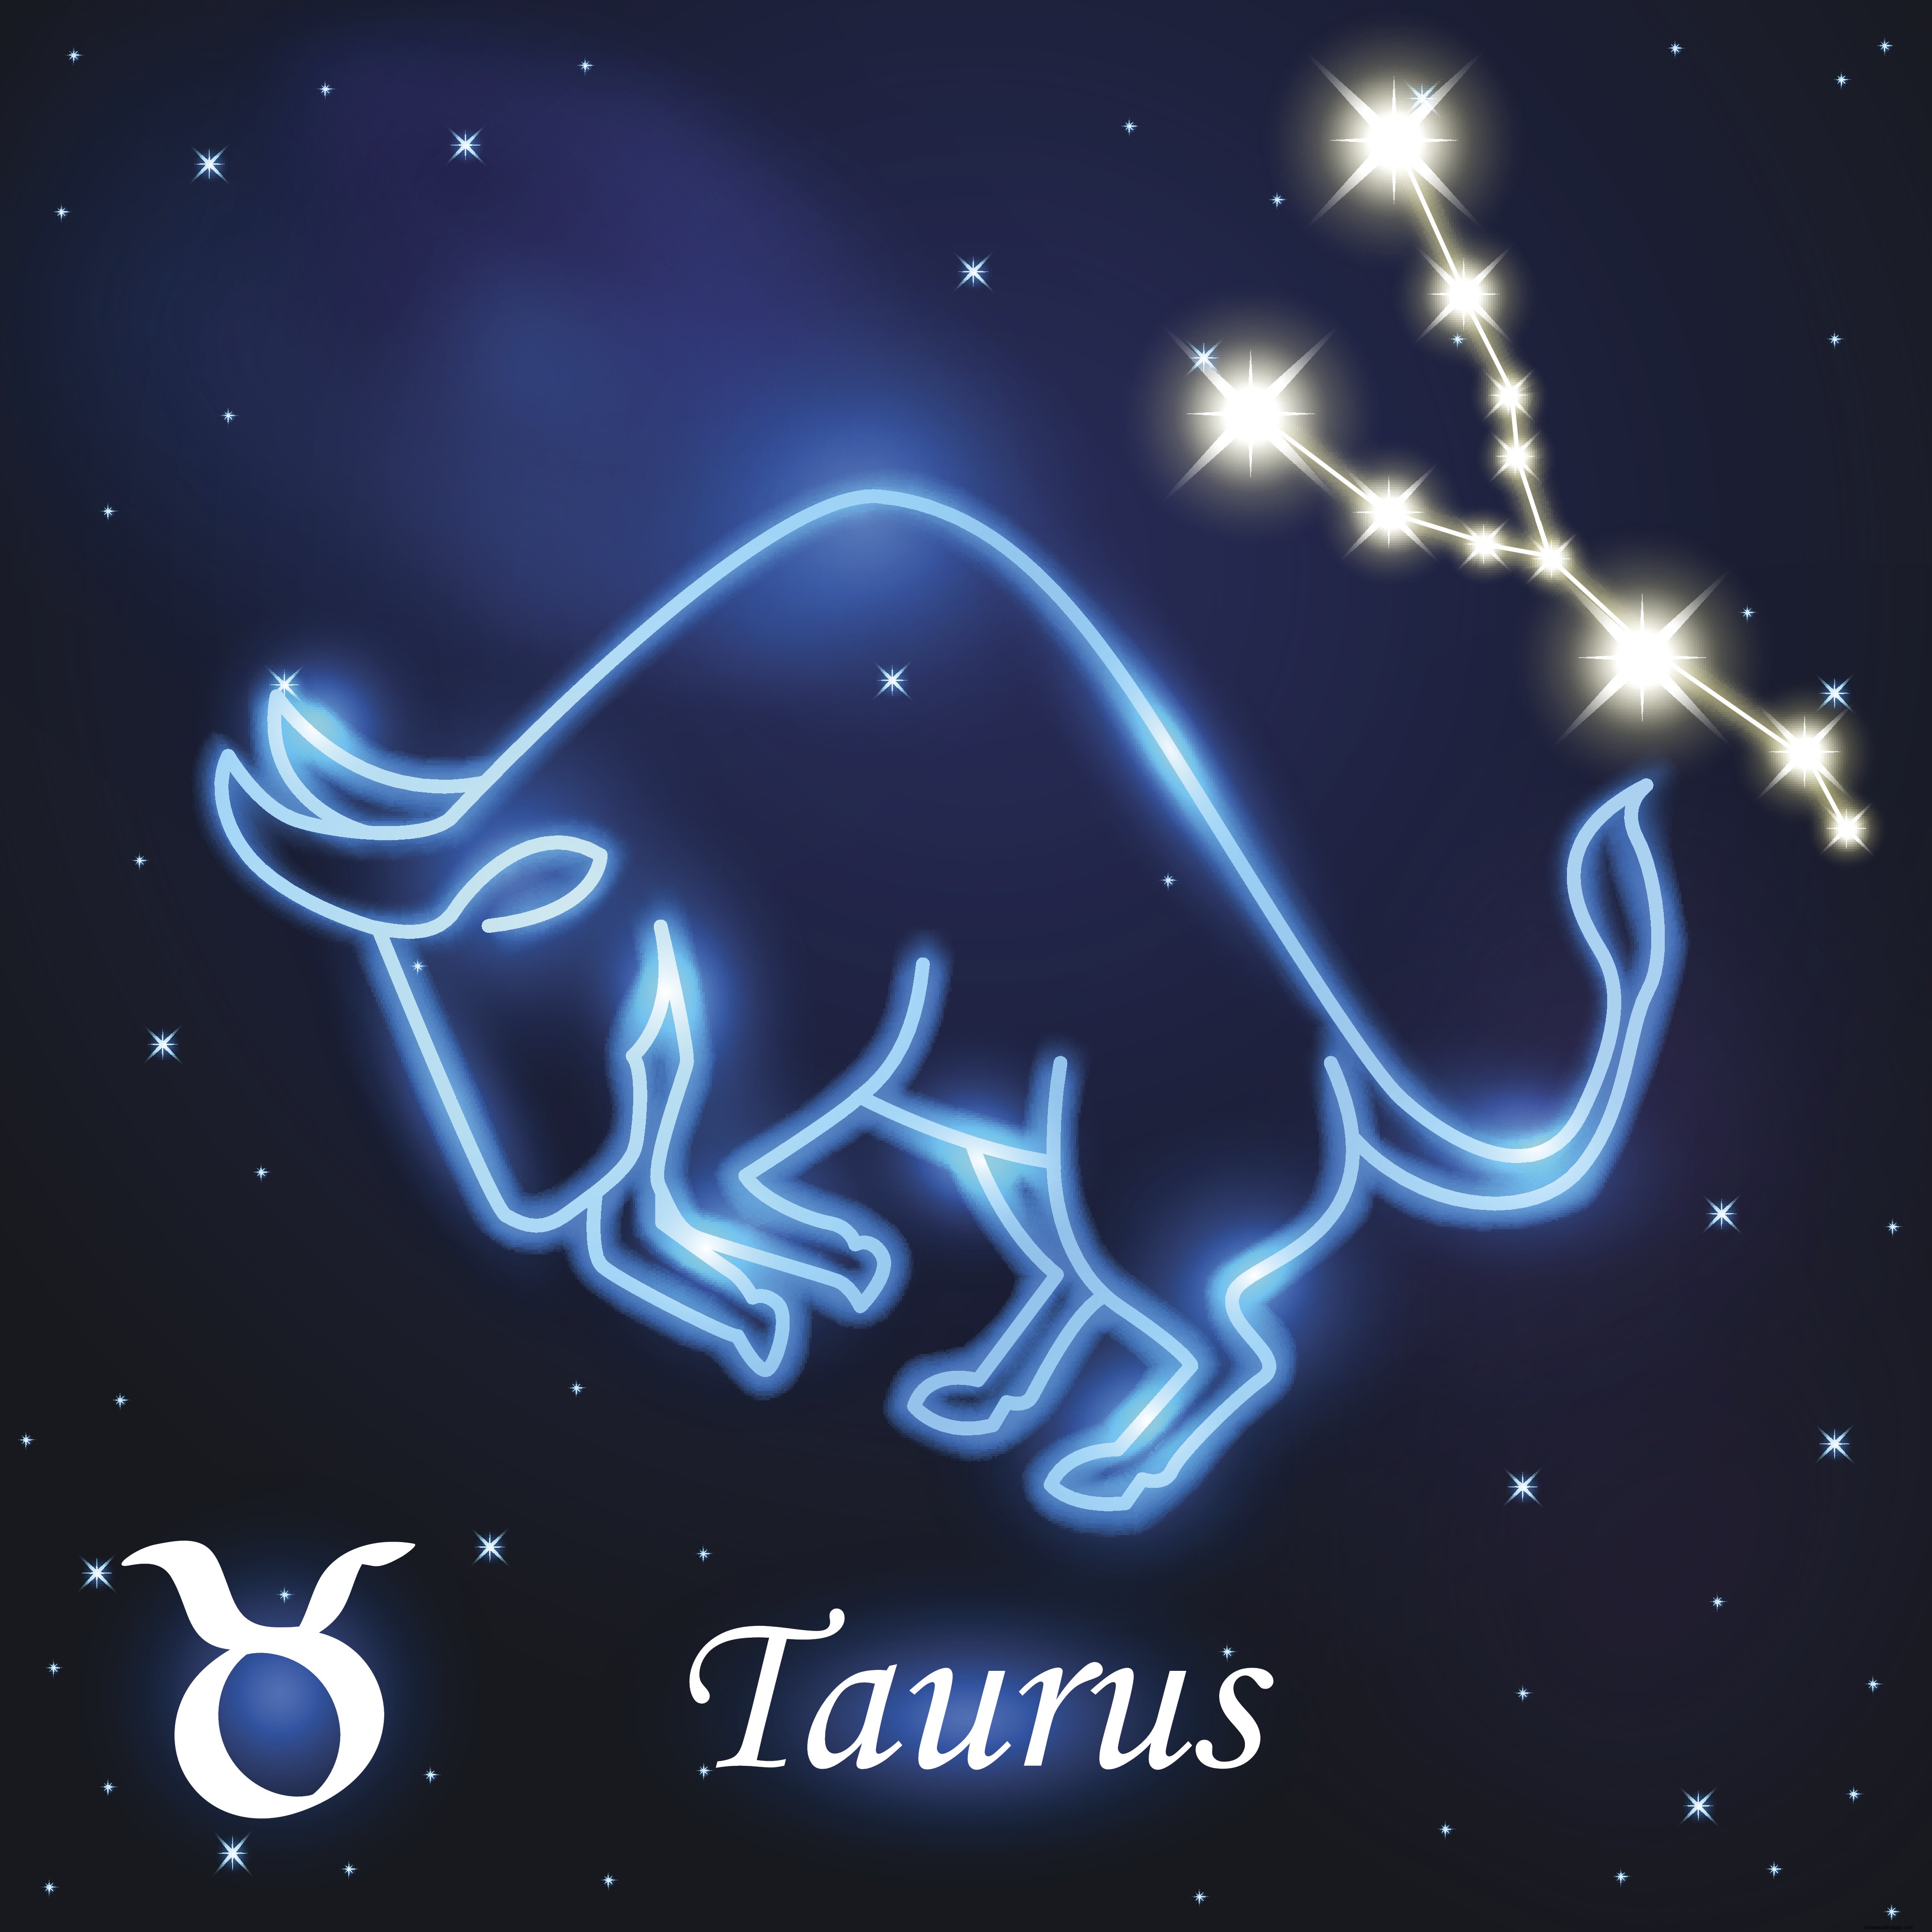 13. desember 2019 Horoskop i dag:Vil du vite hvordan dagen din vil gå? FINNE UT 